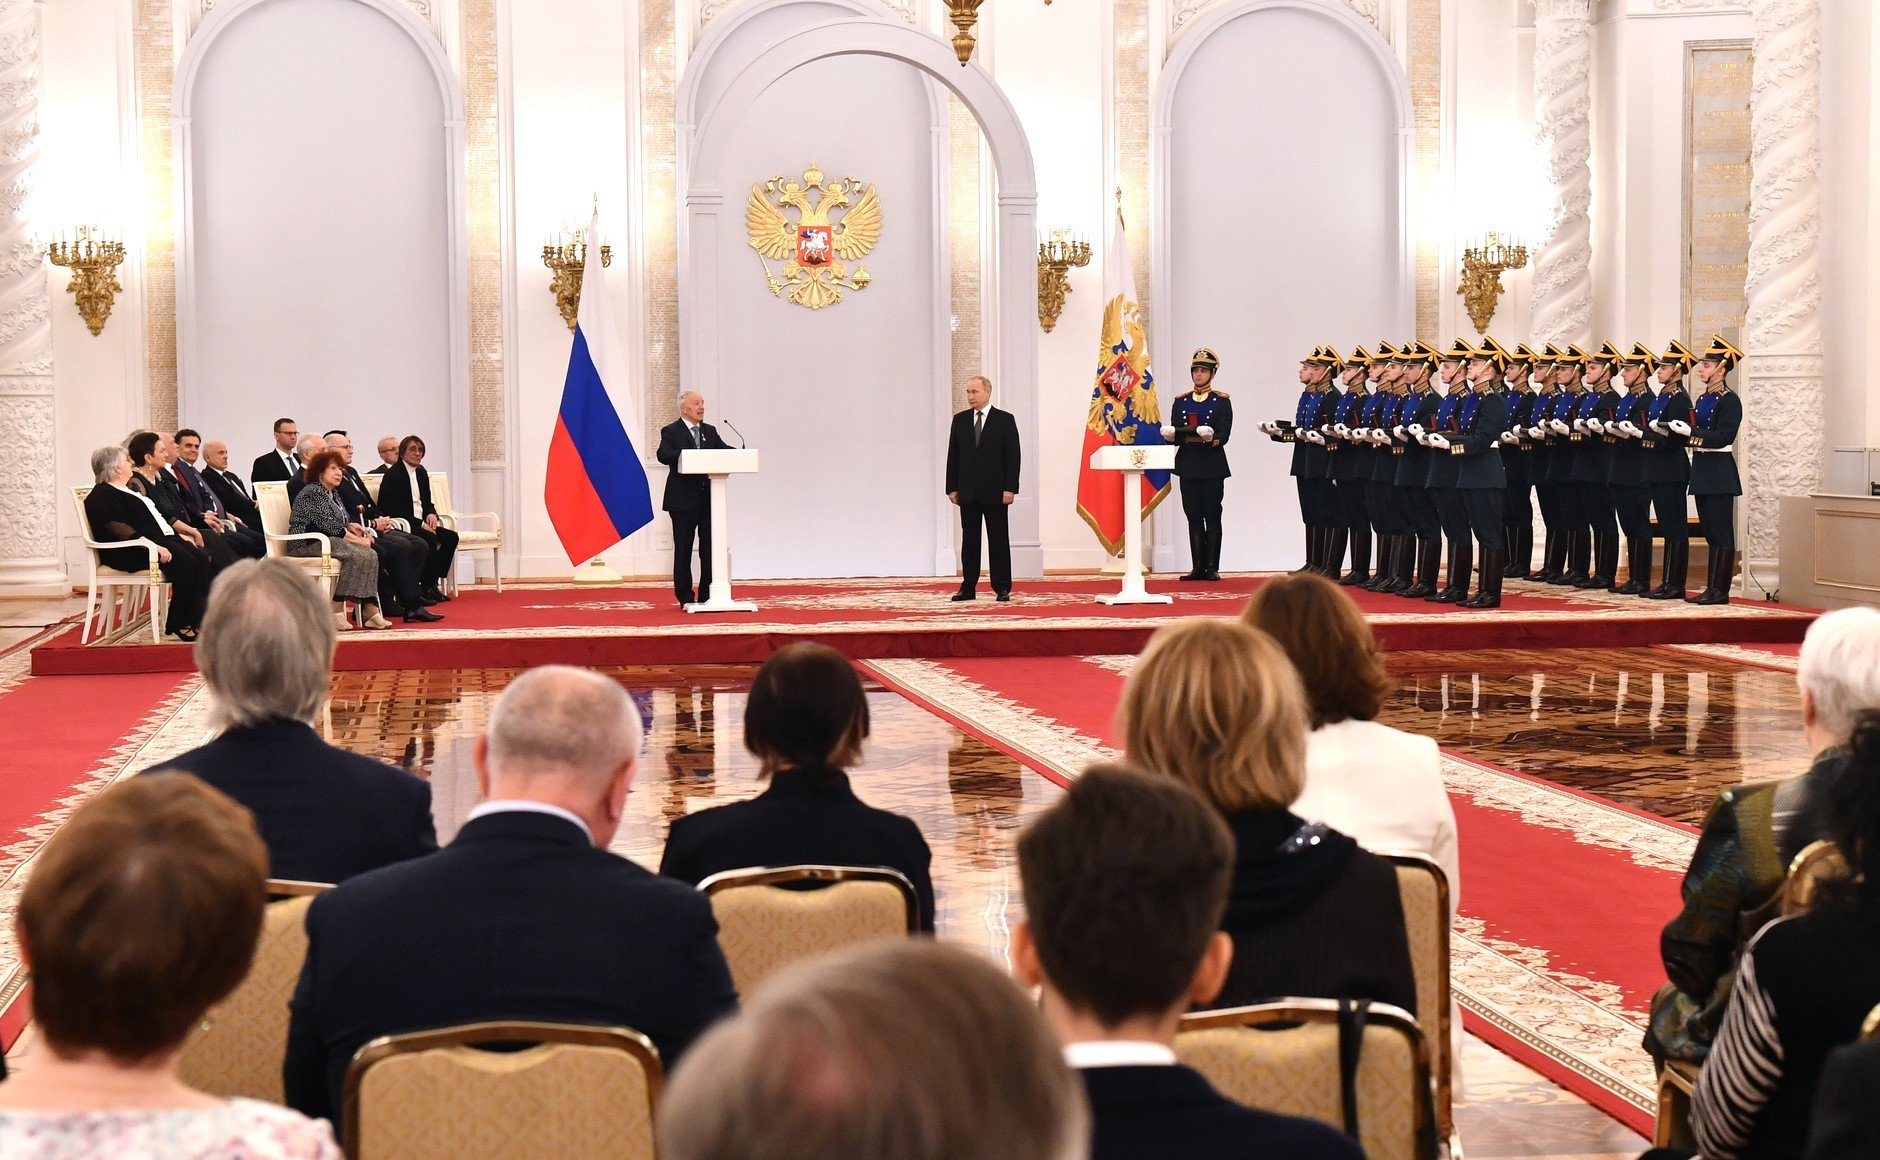 Видео церемонии награждения. Георгиевский зал большого кремлёвского дворца награждение герооев.